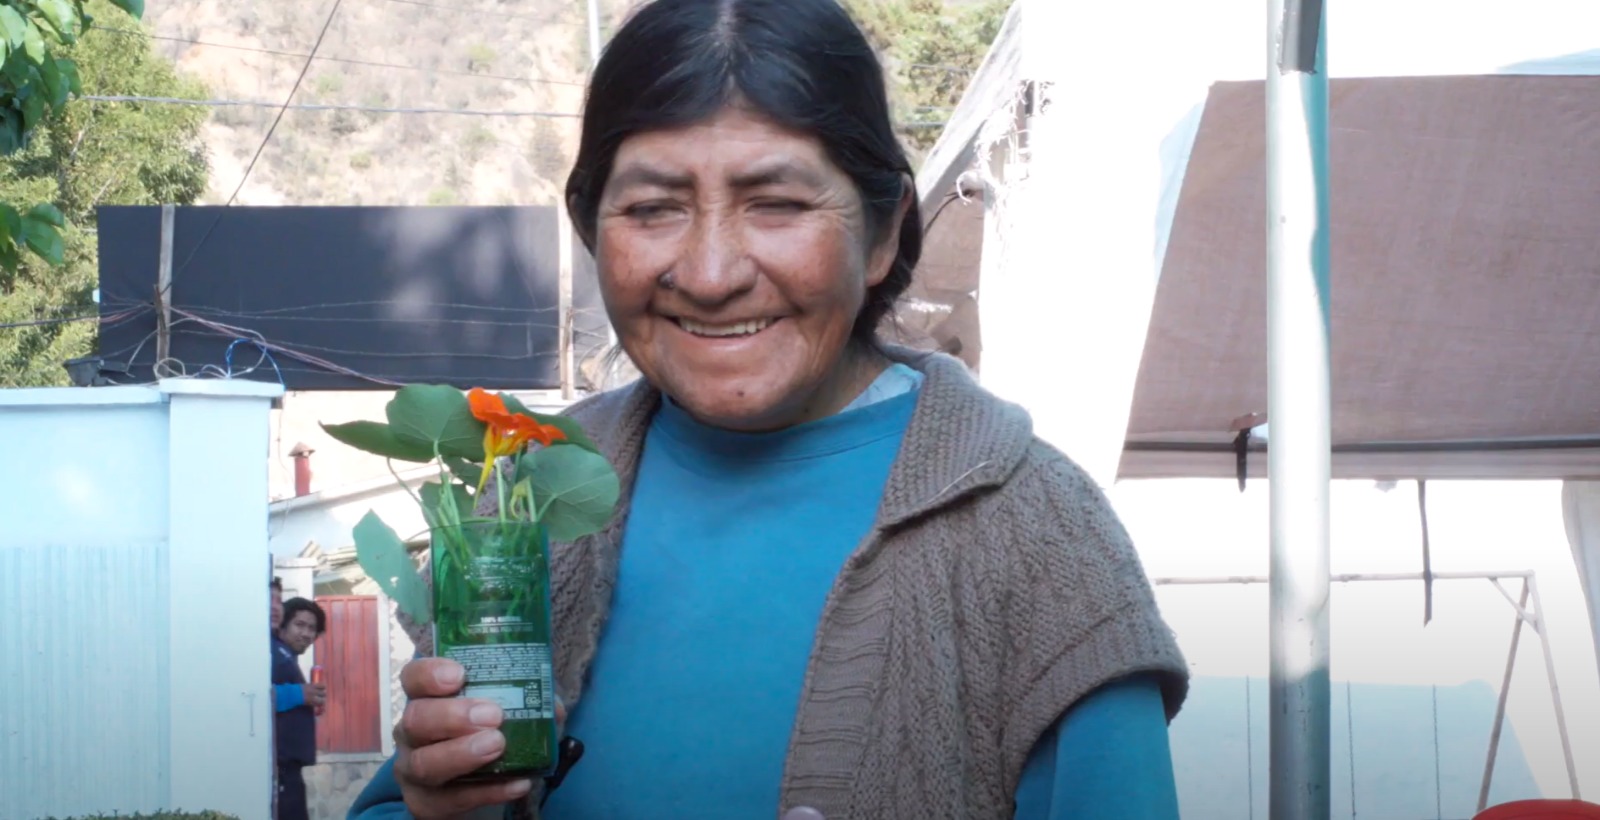 Ciudades Seguras. Natividad Parra, Presidenta recicladoras Asoc. EcoWarmis La Paz. Bolivia